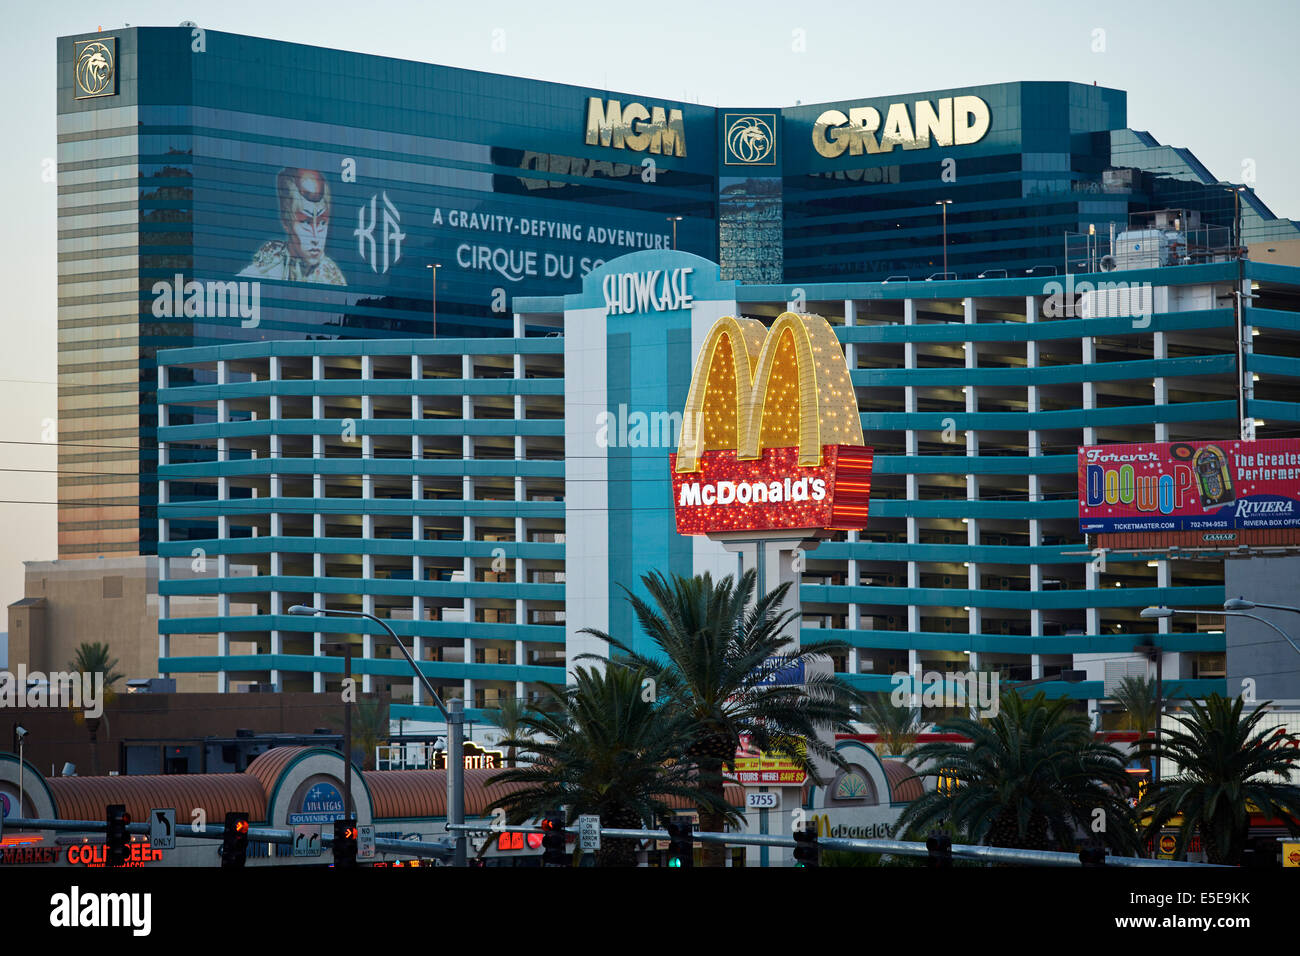 El MGM Grand Hotel de Las Vegas es un casino situado en Las Vegas Strip en Paradise, Nevada. Enmarcado por un McDonalds golden arch Foto de stock